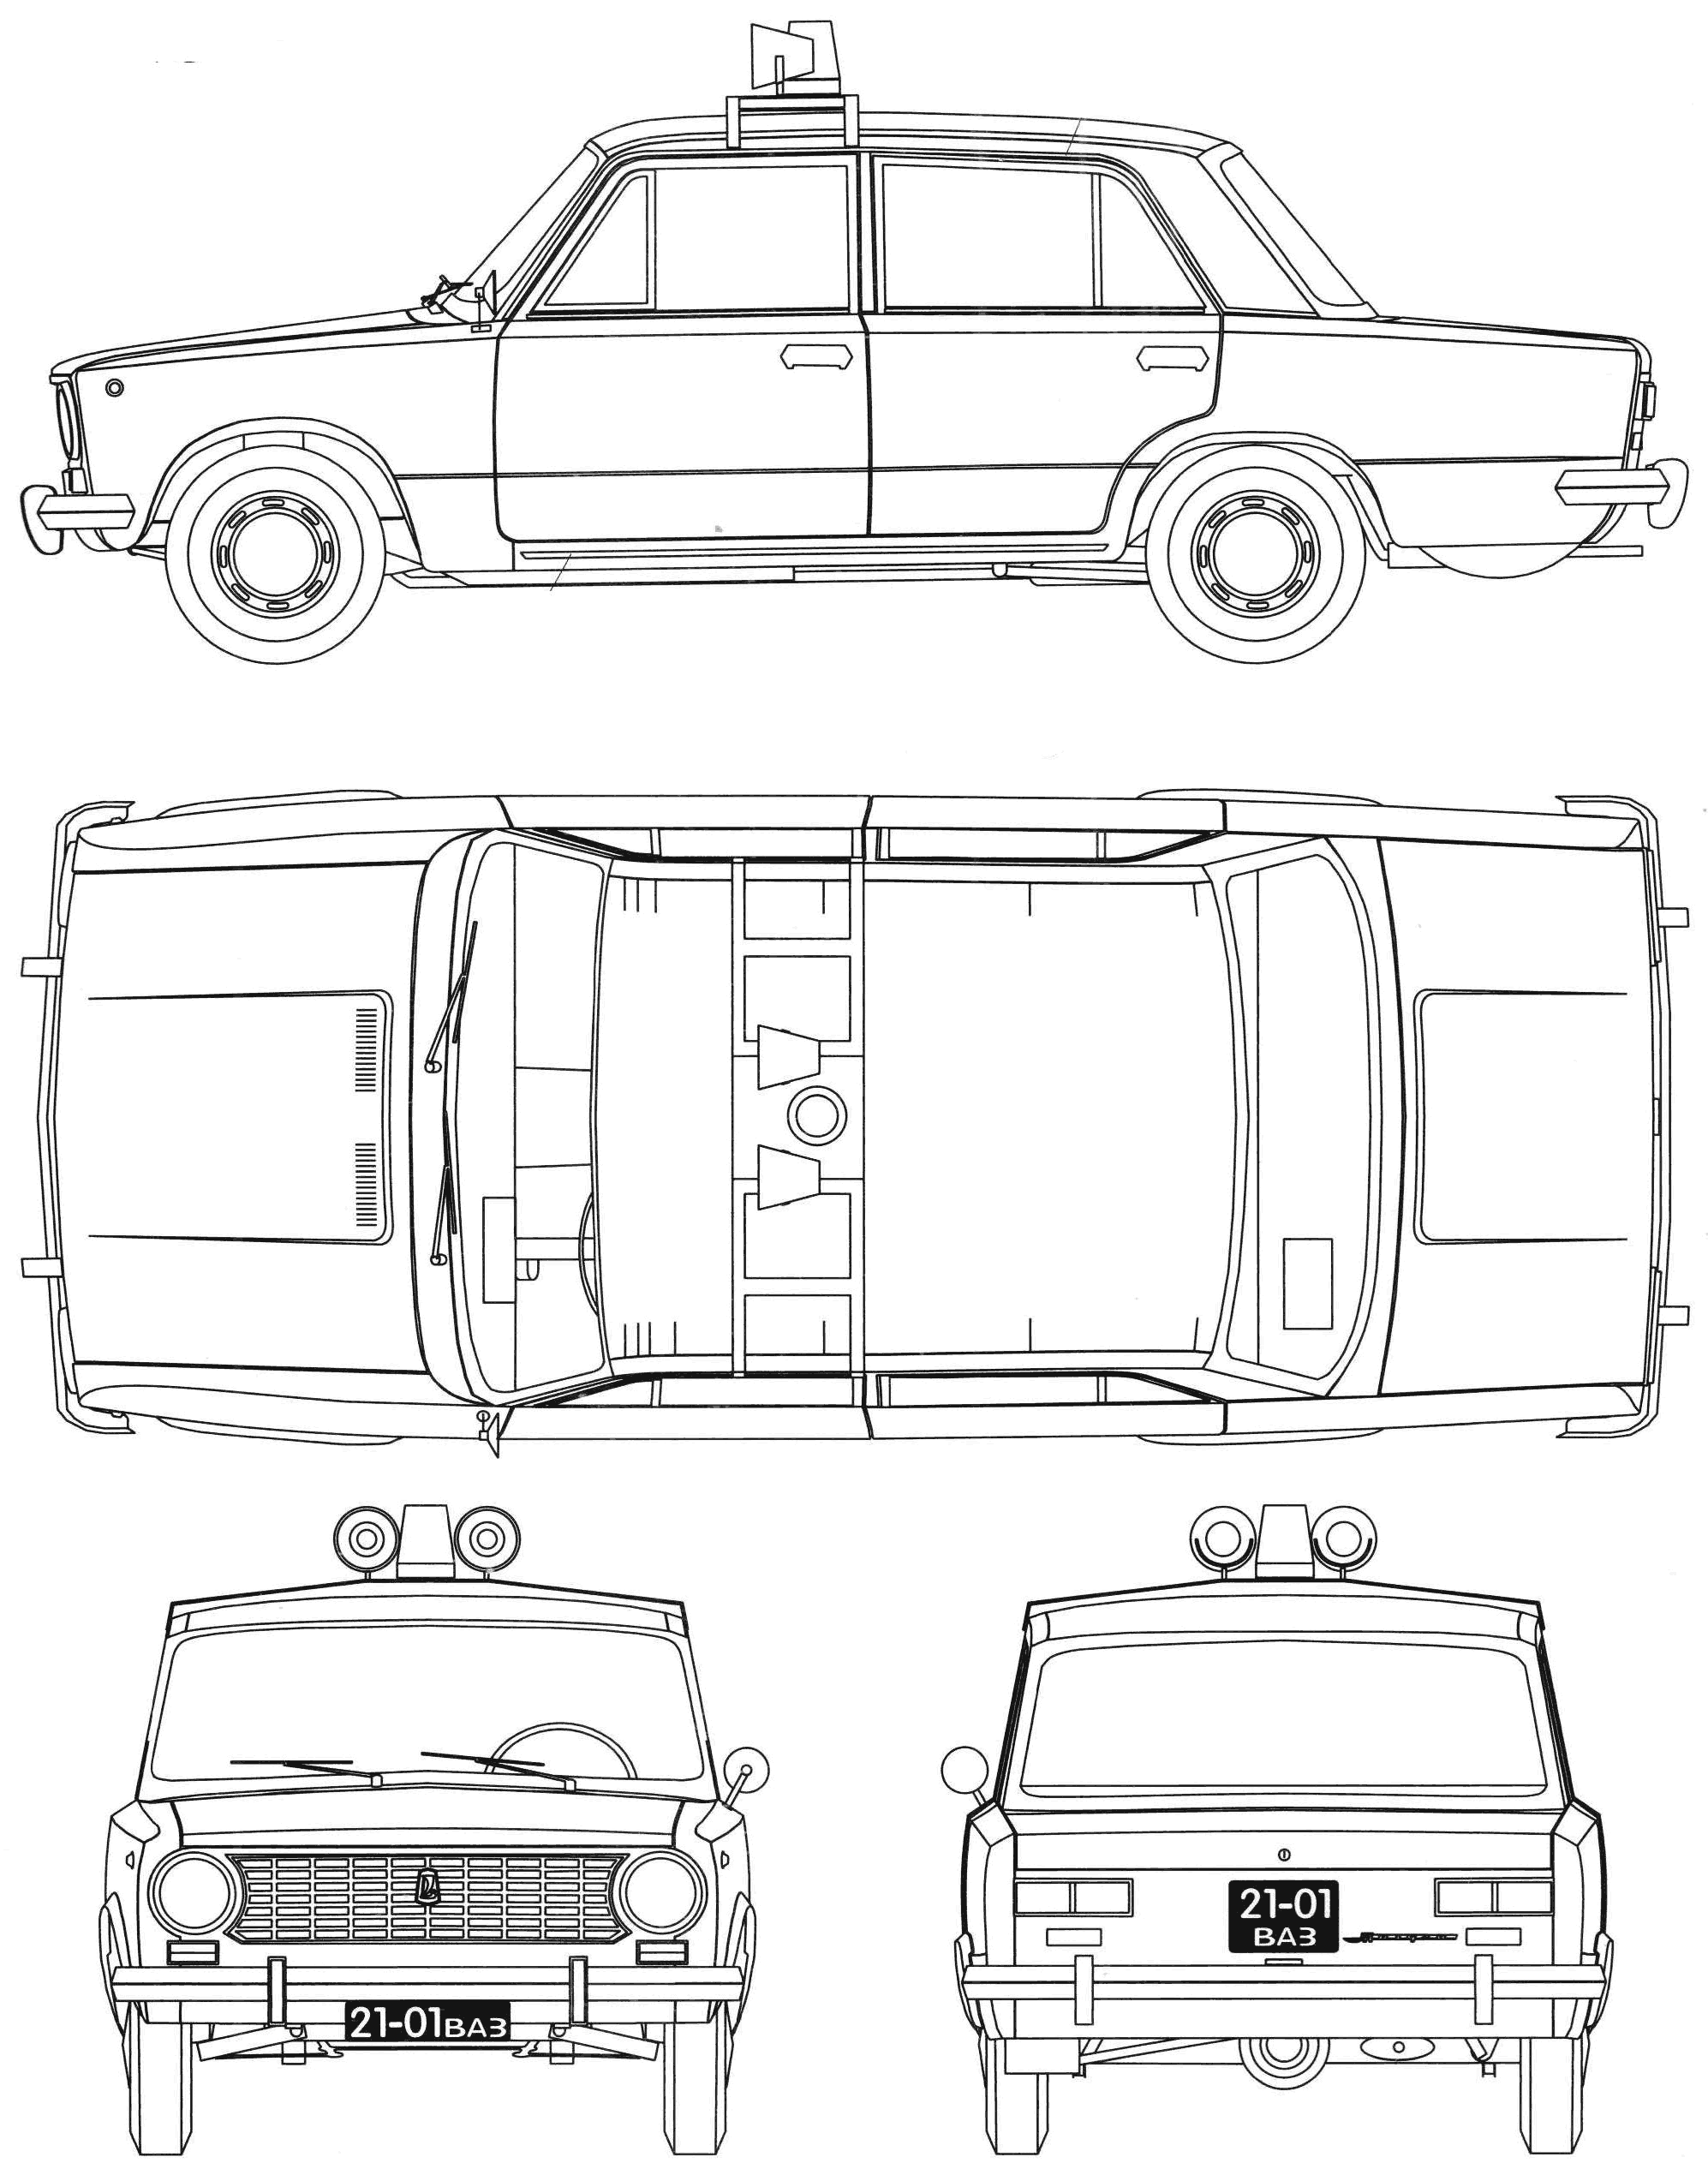 VAZ-2101 Police car blueprint